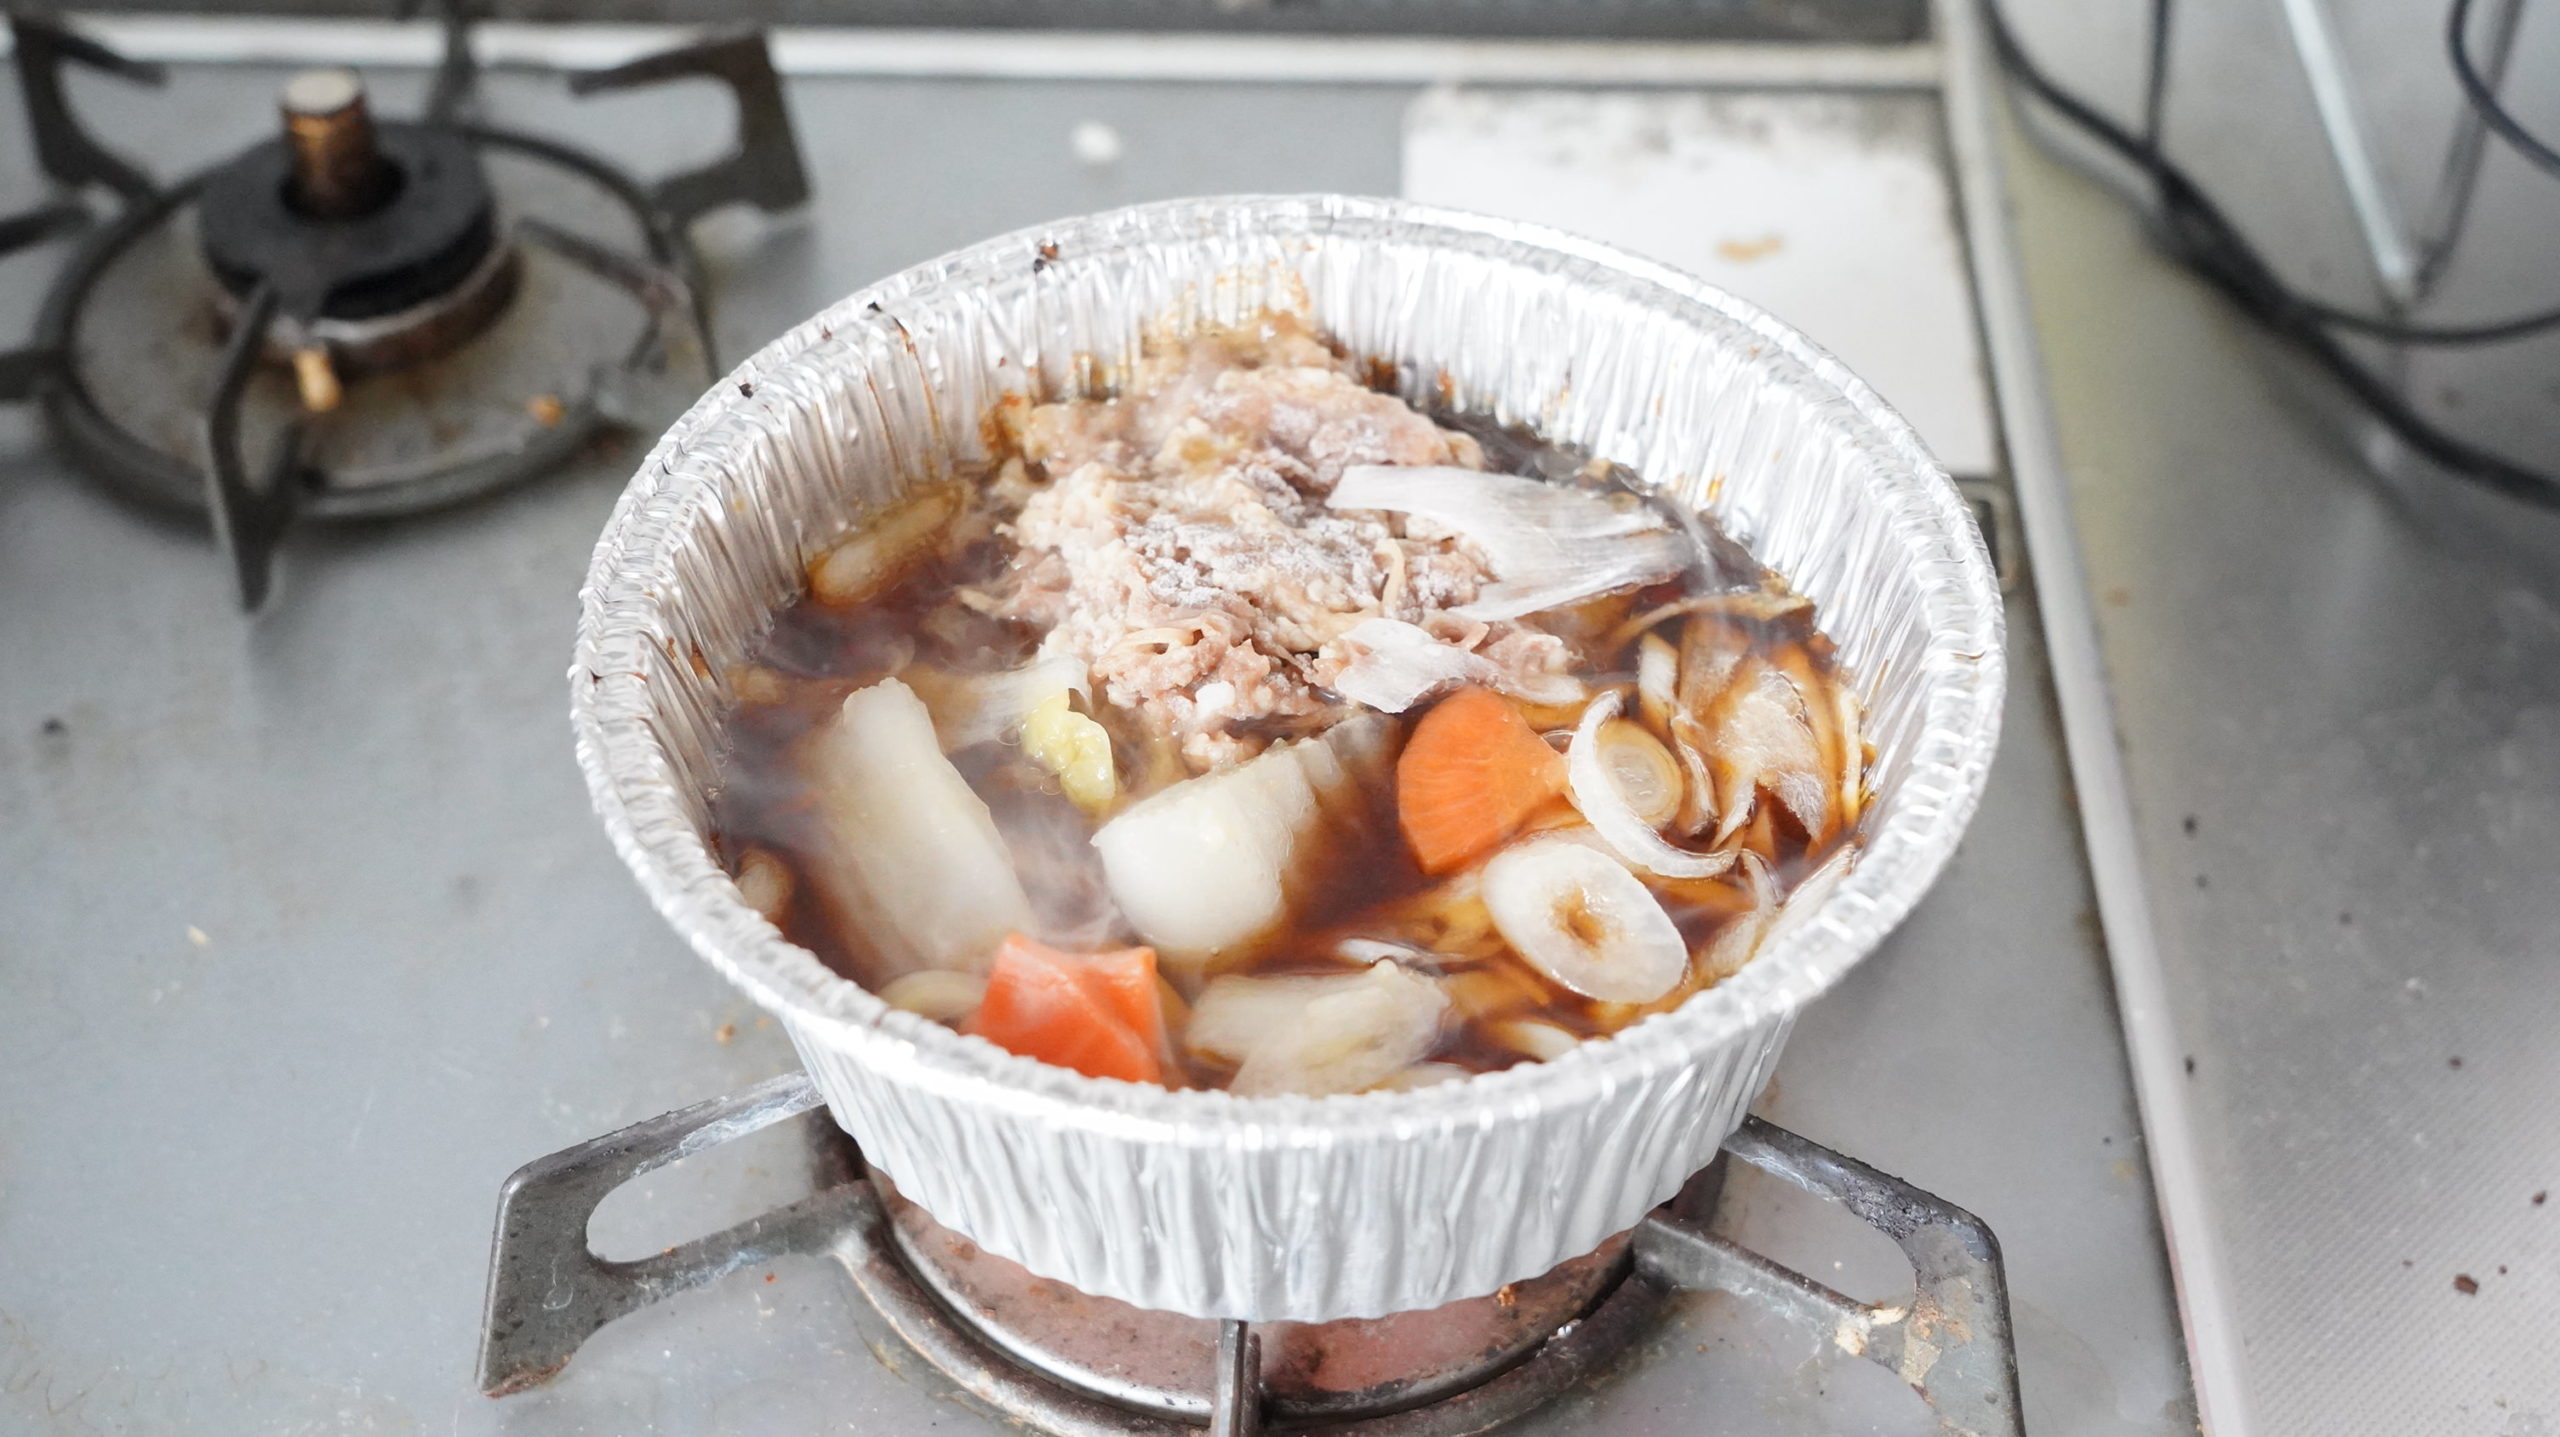 ファミリーマートの冷凍食品「牛肉の旨味！牛すき焼き鍋（うどん入り）」をガスコンロで加熱し終わった写真